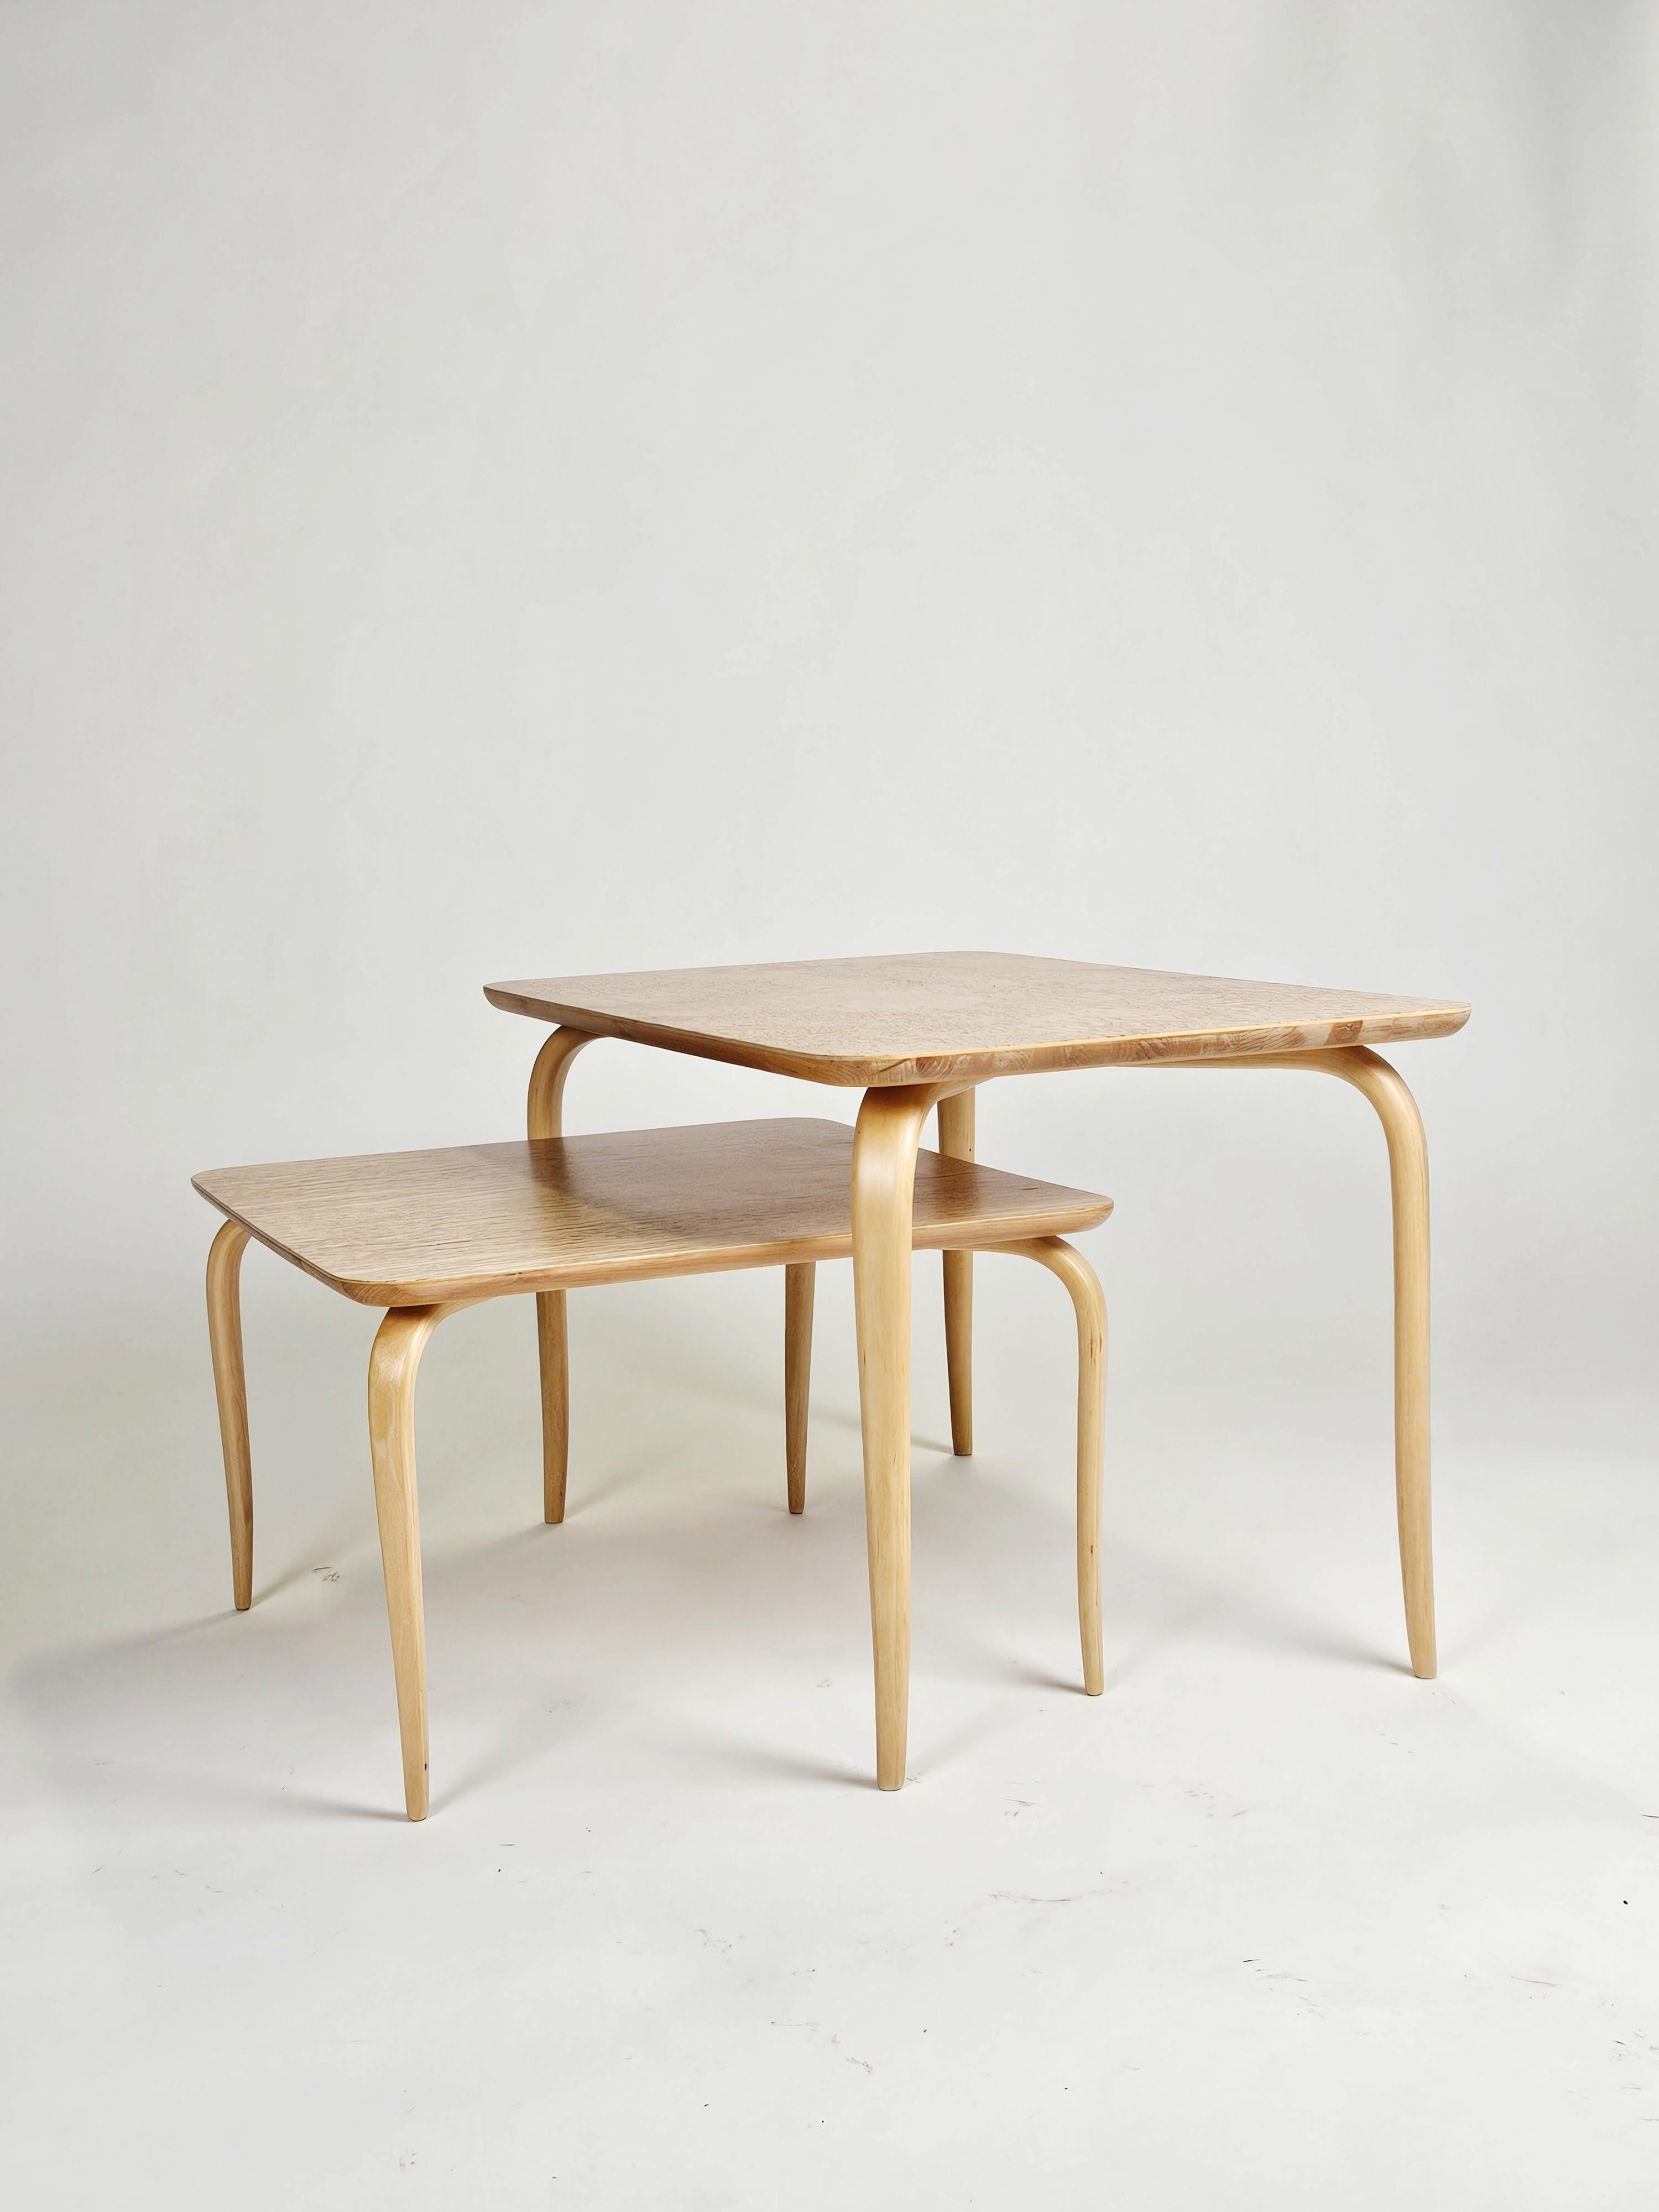 Wunderschönes Set von Couchtischen oder Nisttischen, entworfen von Bruno Mathsson für die Firma Karl Mathsson, Schweden, in den 1950er Jahren. 

Elegantes Design. 

Lockenbirkenplatte mit schönem Zustand. 

Der kleinere Tisch misst 54,5x54,5 cm und